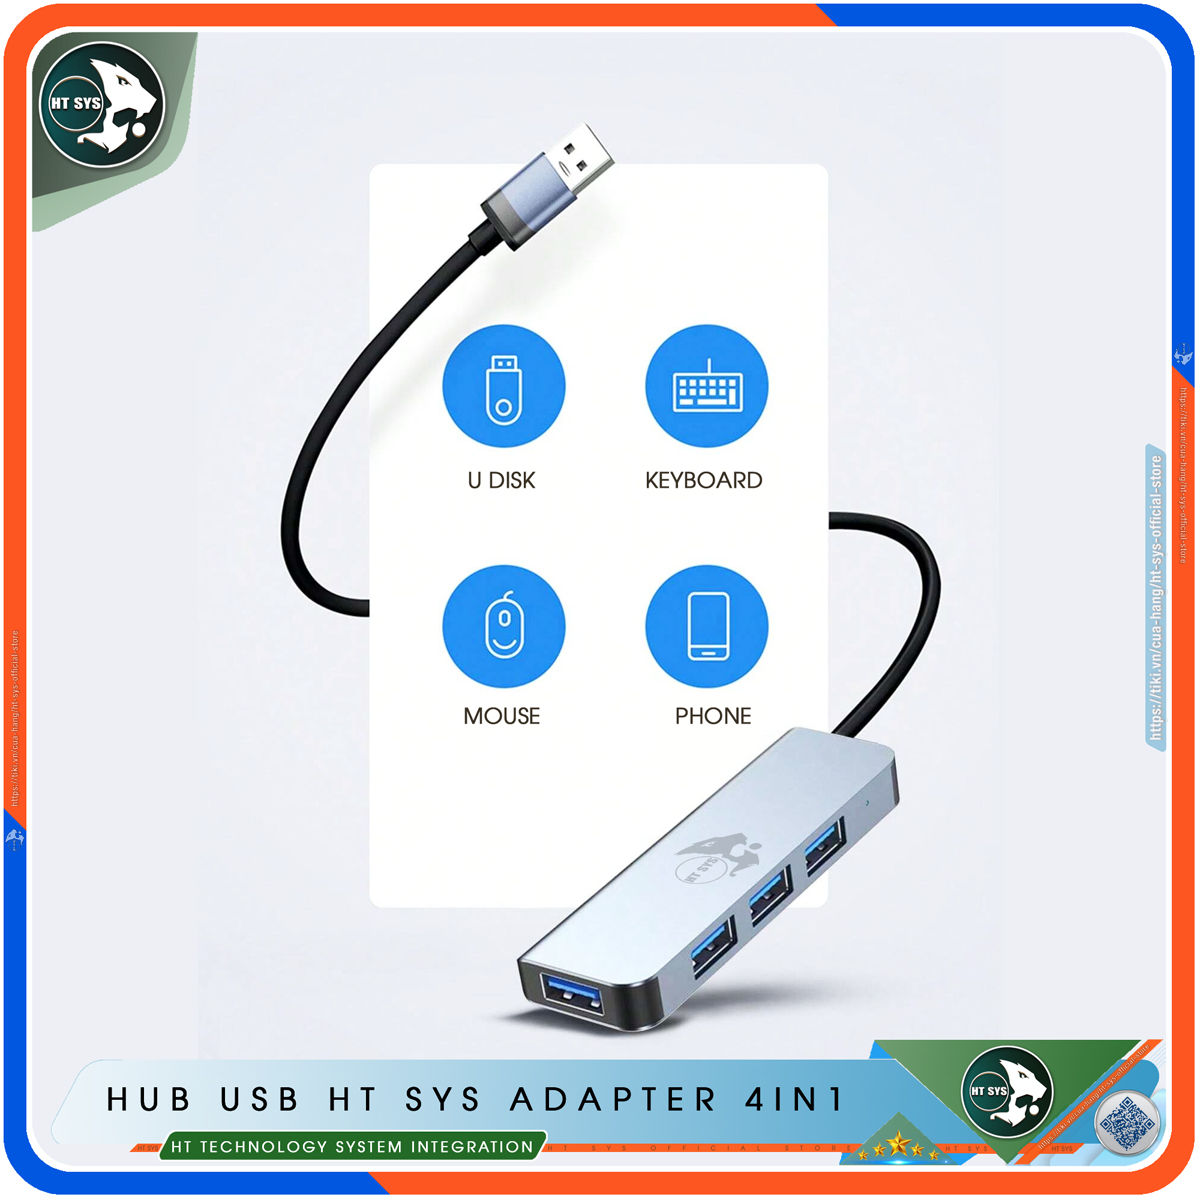 Hub Type C Và Hub USB 3.0 HT SYS Adapter 4in1 - Cổng Chia USB Mở Rộng Kết Nối Tốc Độ Cao Dành Cho Macbook, Laptop, PC - Hub Chuyển Đổi USB Type-C Hỗ Trợ Sạc Pin, Kết Nối Đa Năng ổ Cứng, Bàn Phím, Chuột, Máy In, Ổ Chia USB - Hàng Chính Hãng